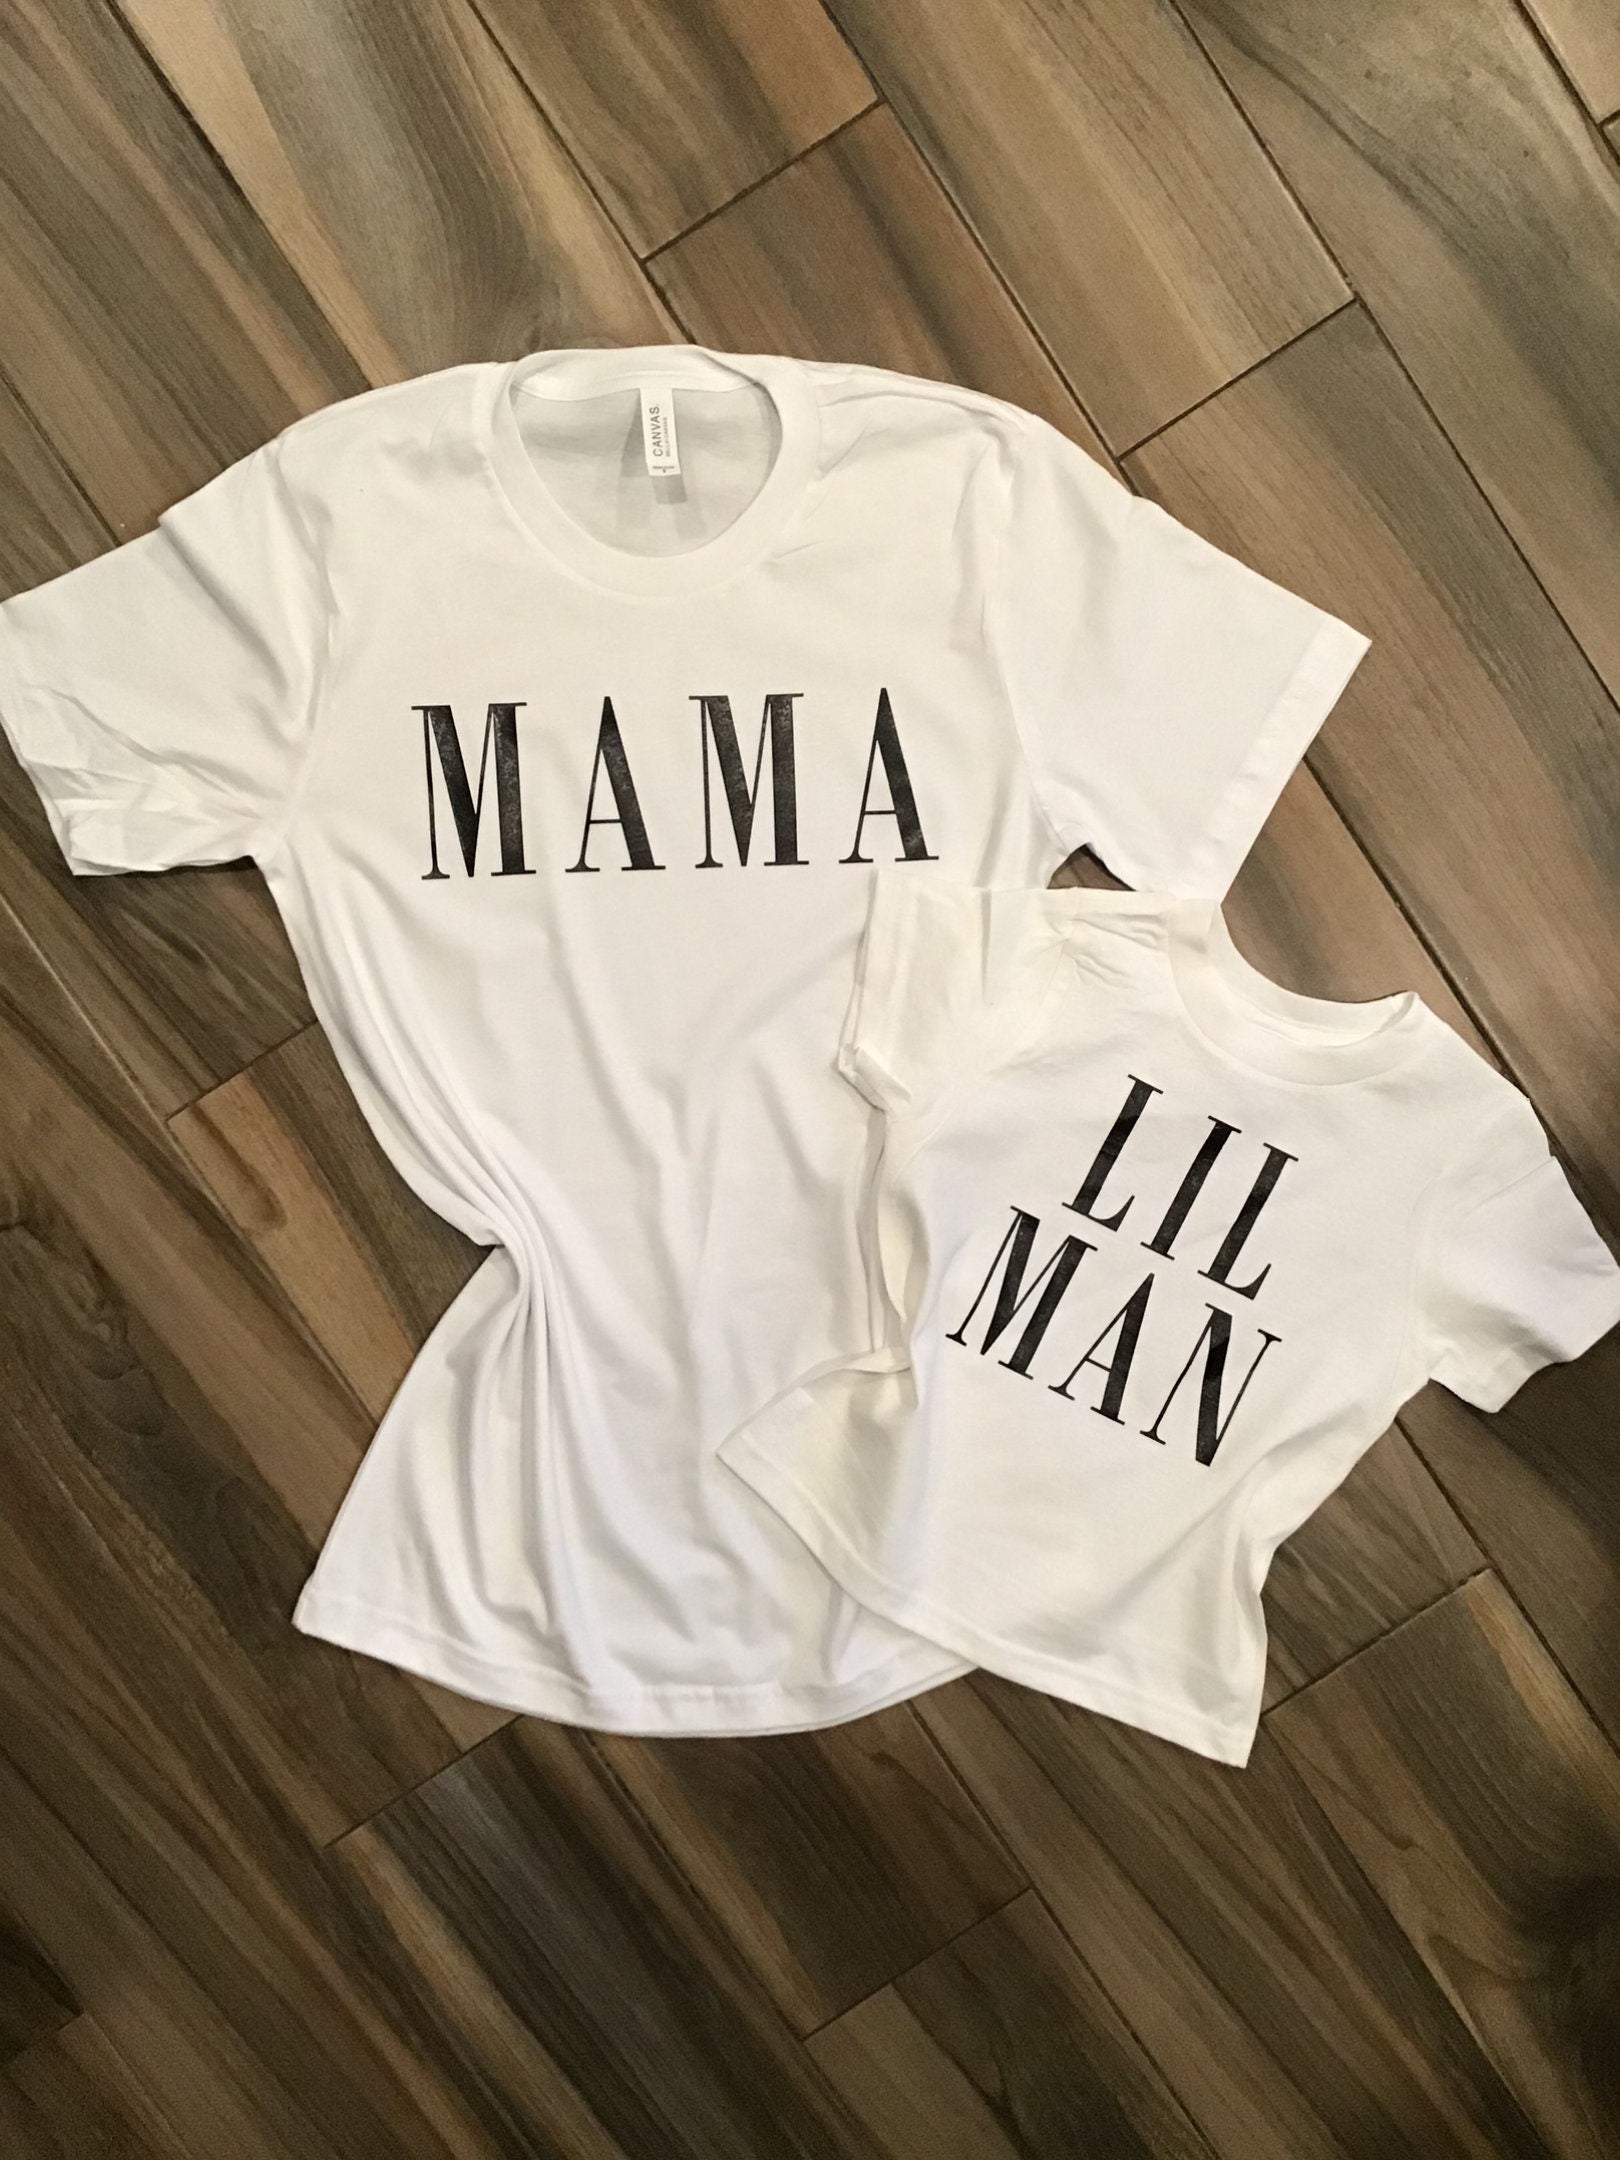 Mama and Lil Man Shirt Set